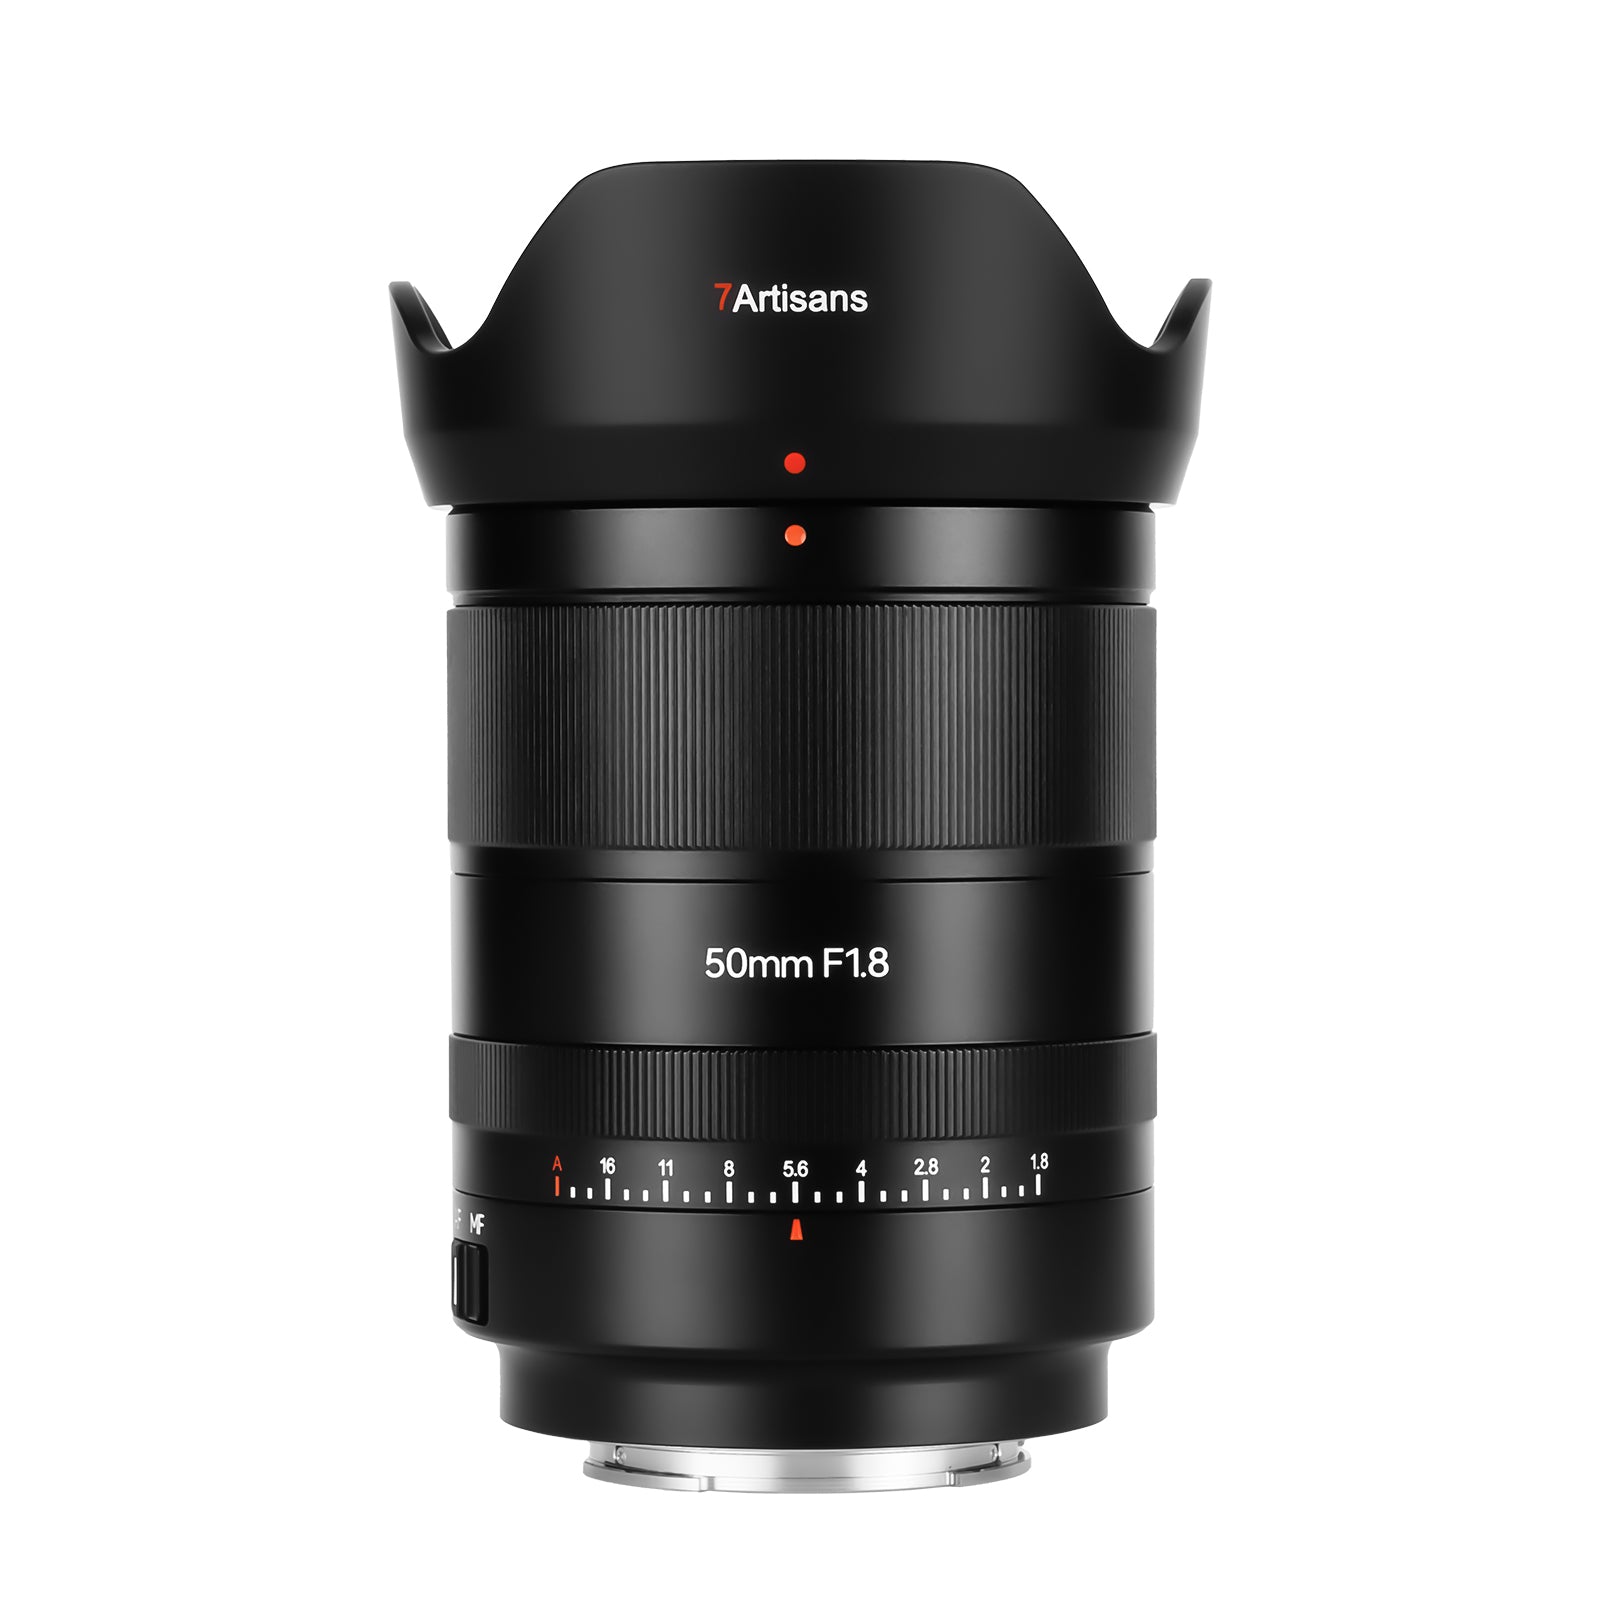 AF 50mm F1.8 Lens for Z/E – Official 7Artisans Store